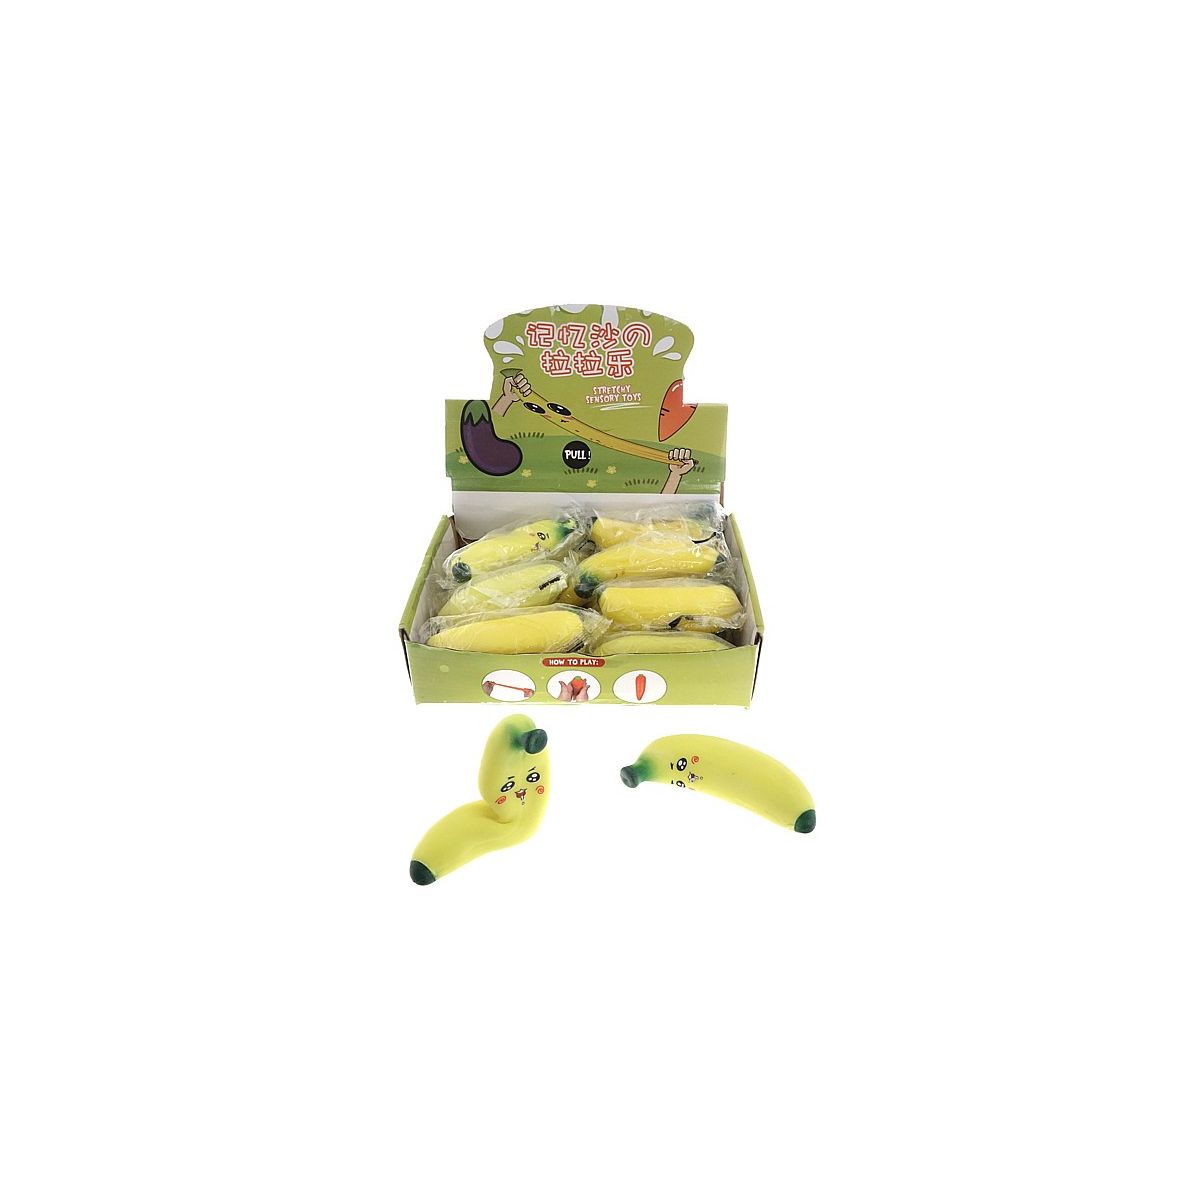 Gniotek banan Adar (543997)